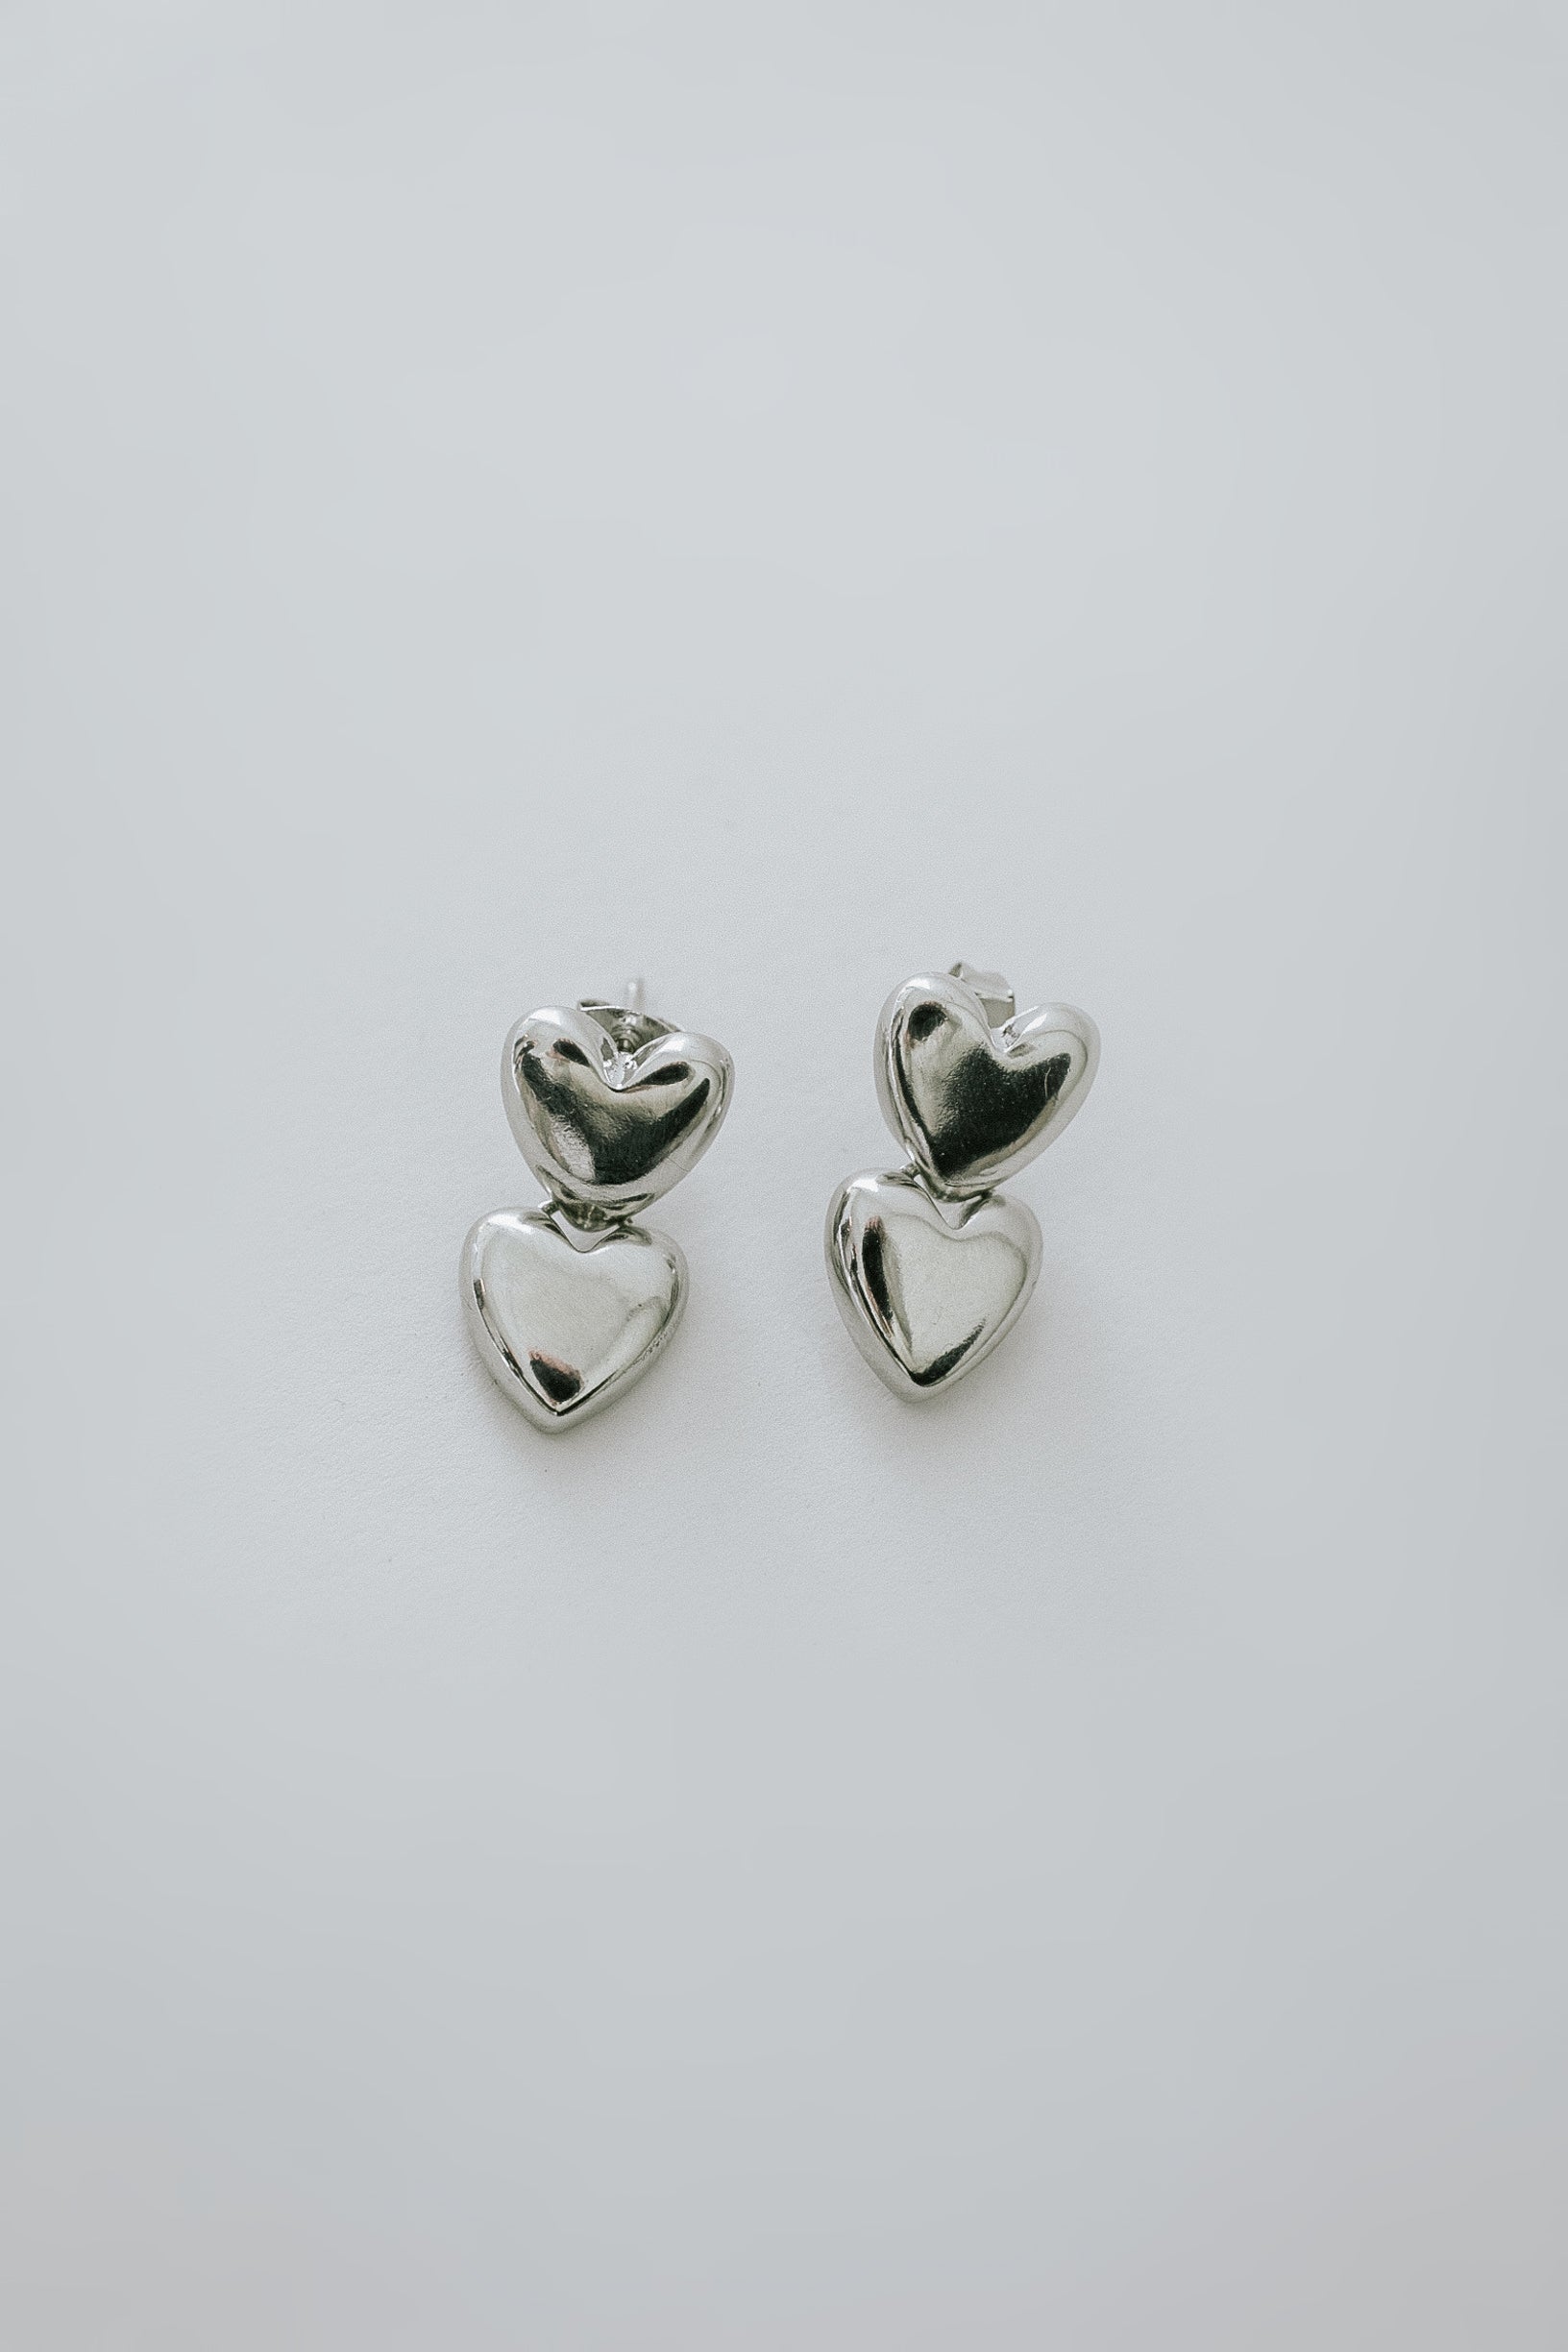 One Day Heart Earrings - Silver